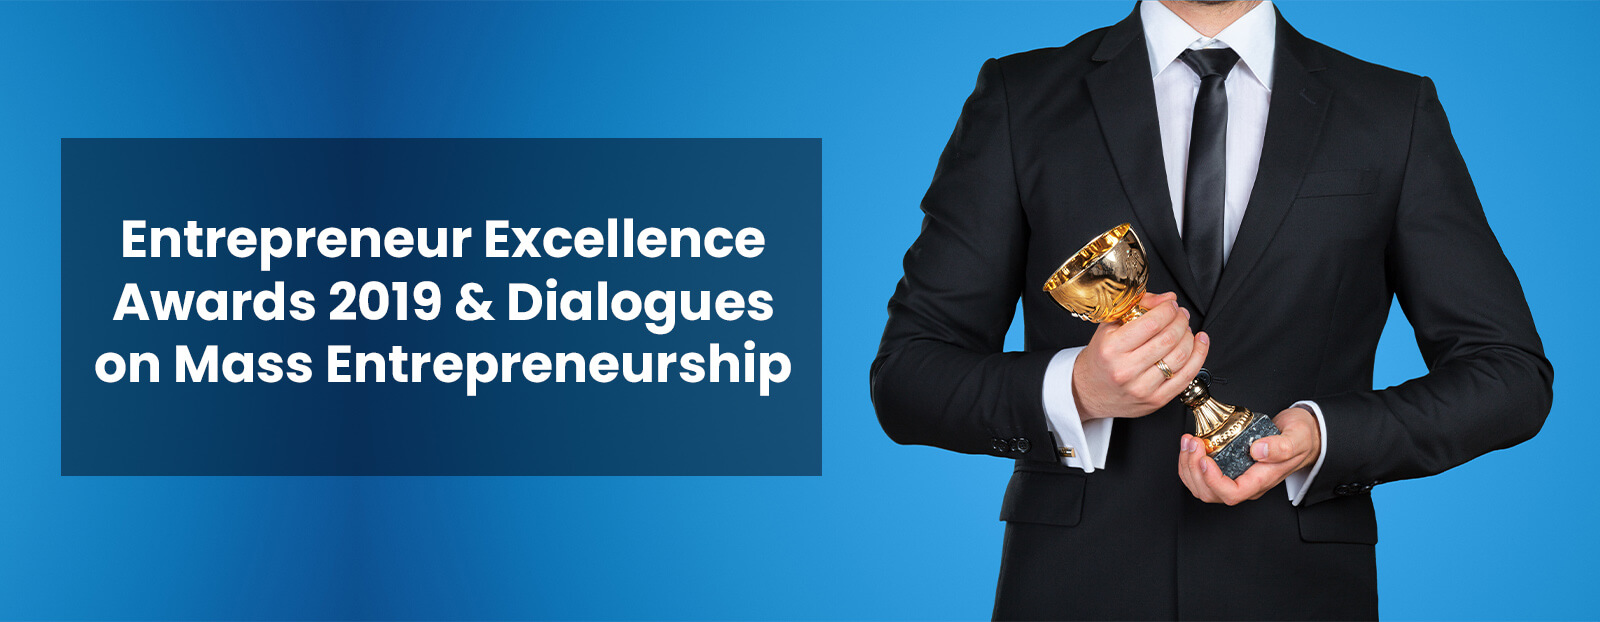 Entrepreneur Excellence Awards 2019 & Dialogues on Mass Entrepreneurship